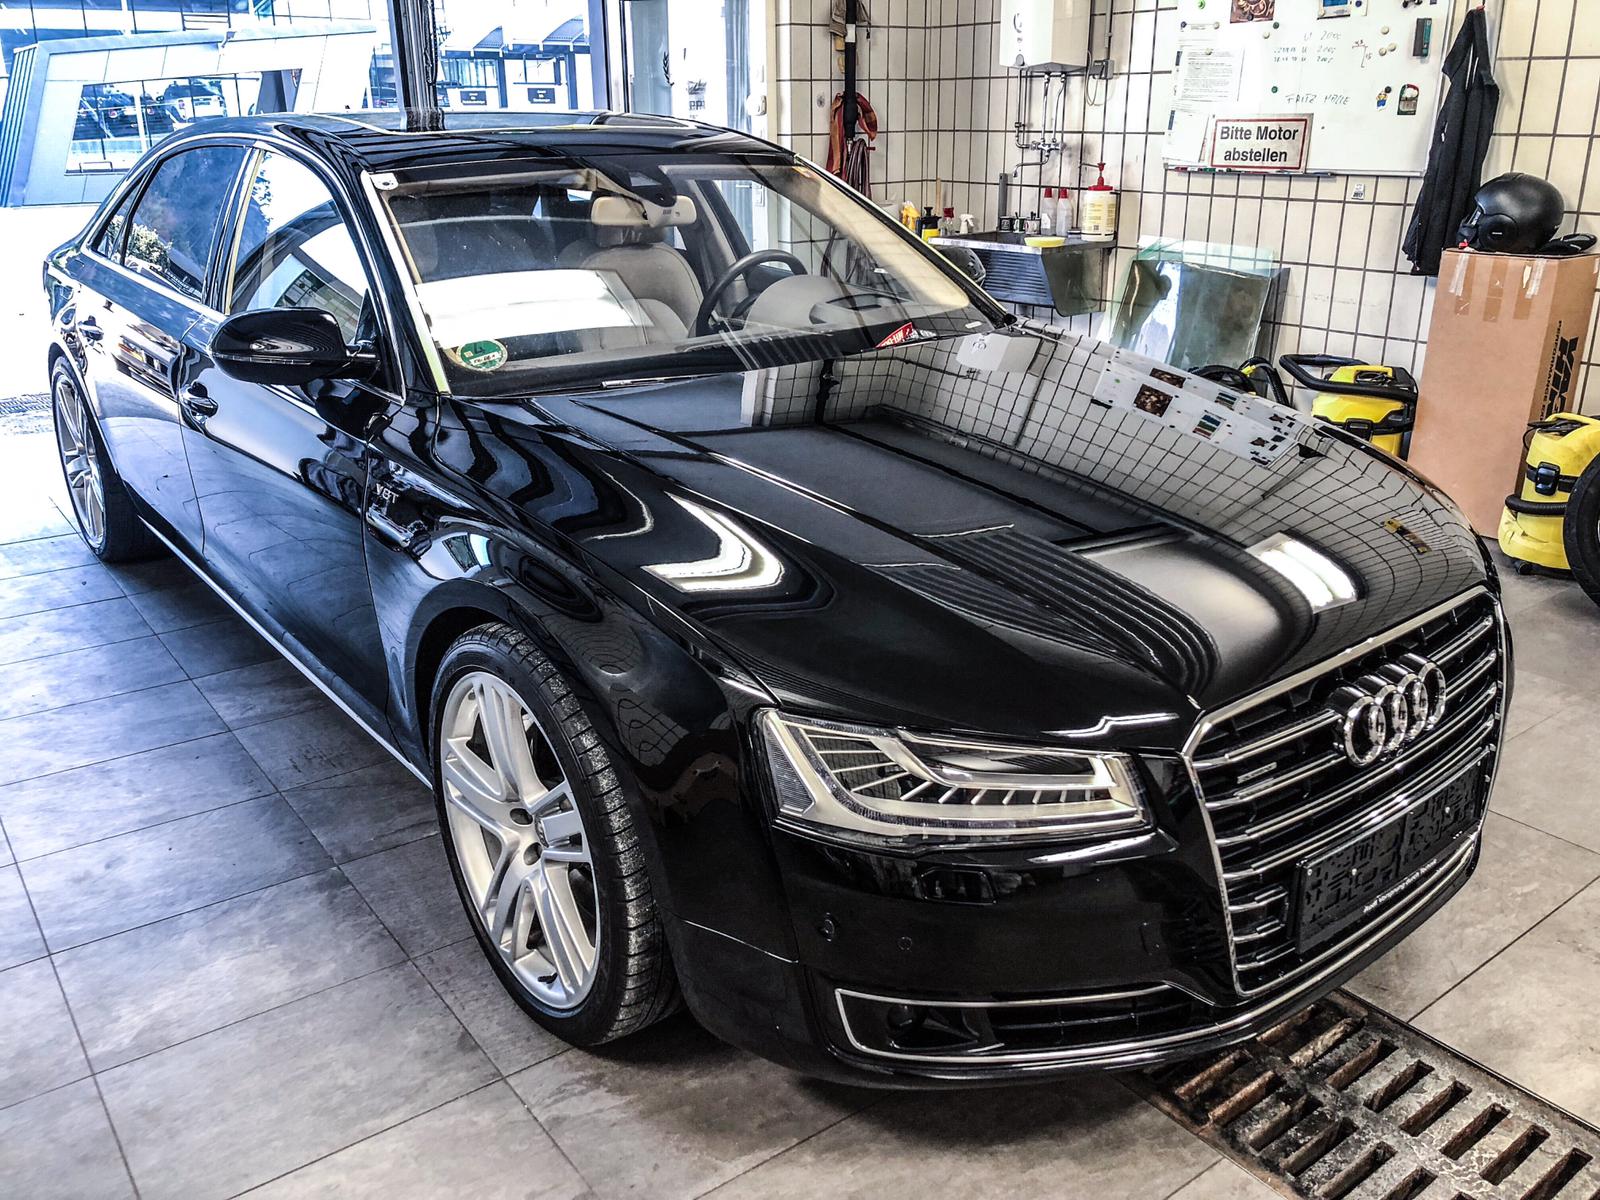 Audi schwarz